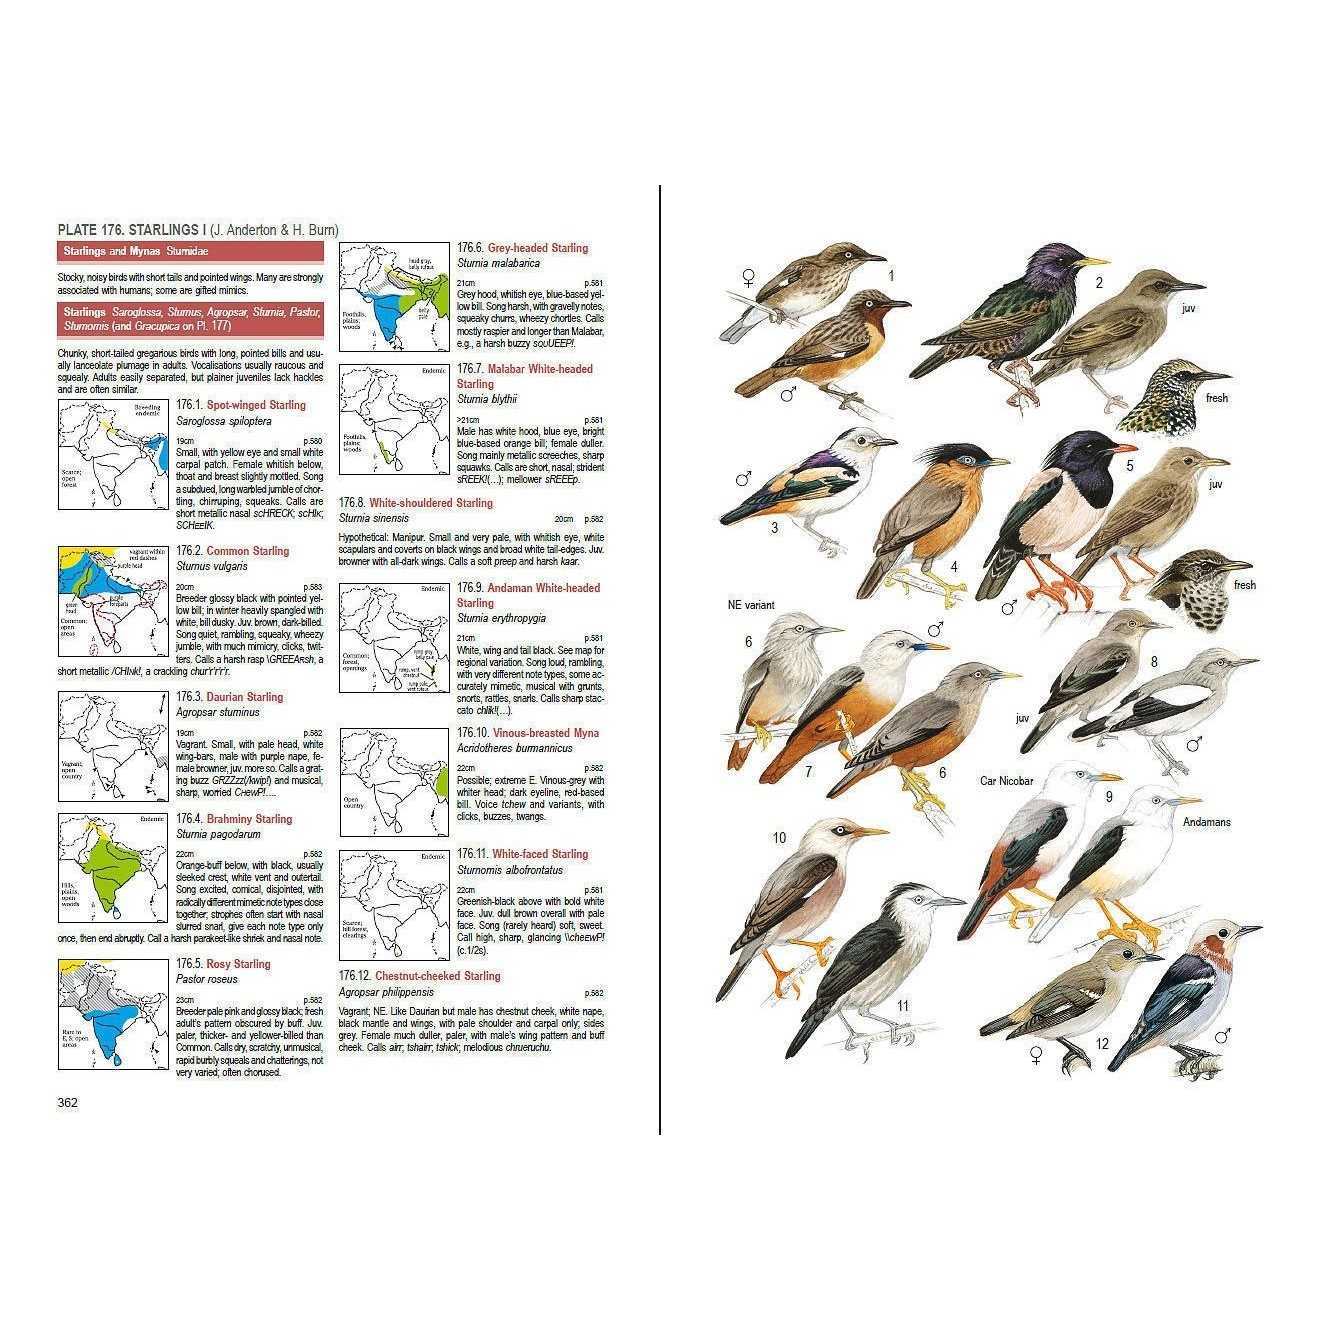 Птицы краснодарского края: лесные, степные, побережья, водоплавающие